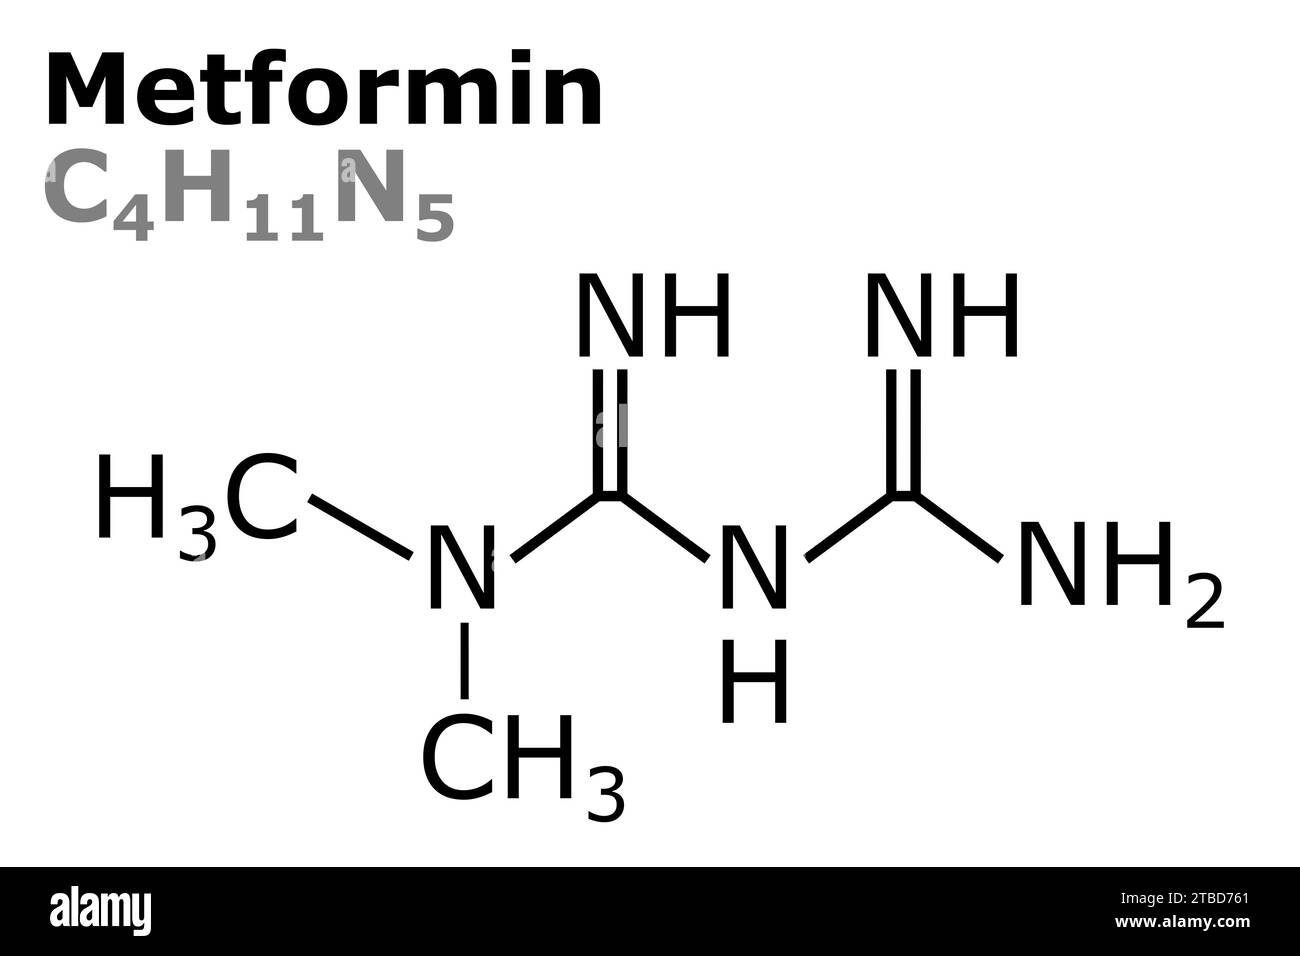 Vektor-Illustration von Metformin C4H11N5 Heilung Formel für die Behandlung von Diabetes, heutzutage zur Verbesserung der Lebensdauer und Gesundheit Stockfoto